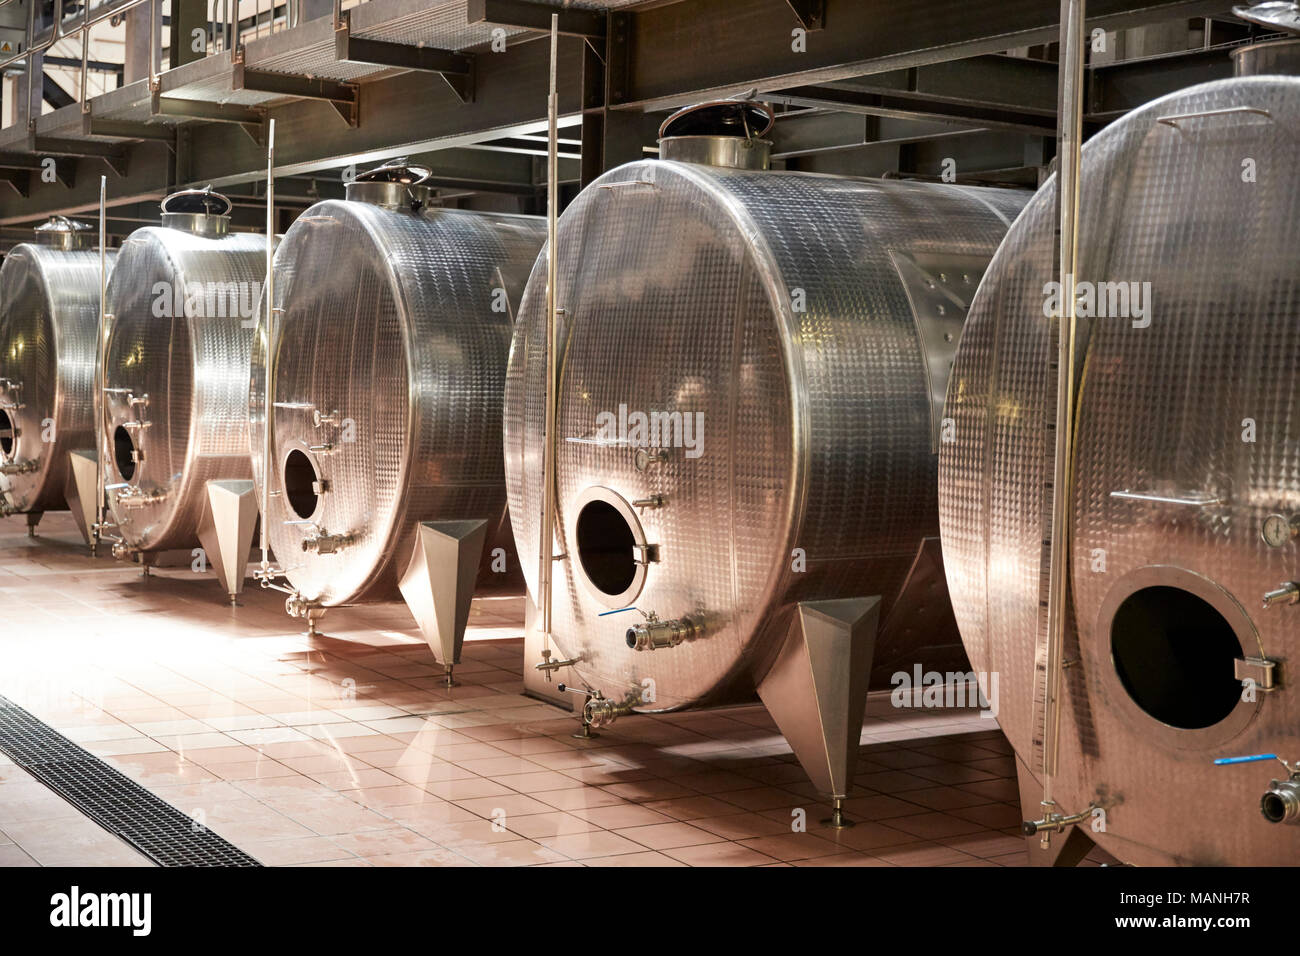 Una fila di recipienti di metallo in un moderno impianto di vinificazione Foto Stock